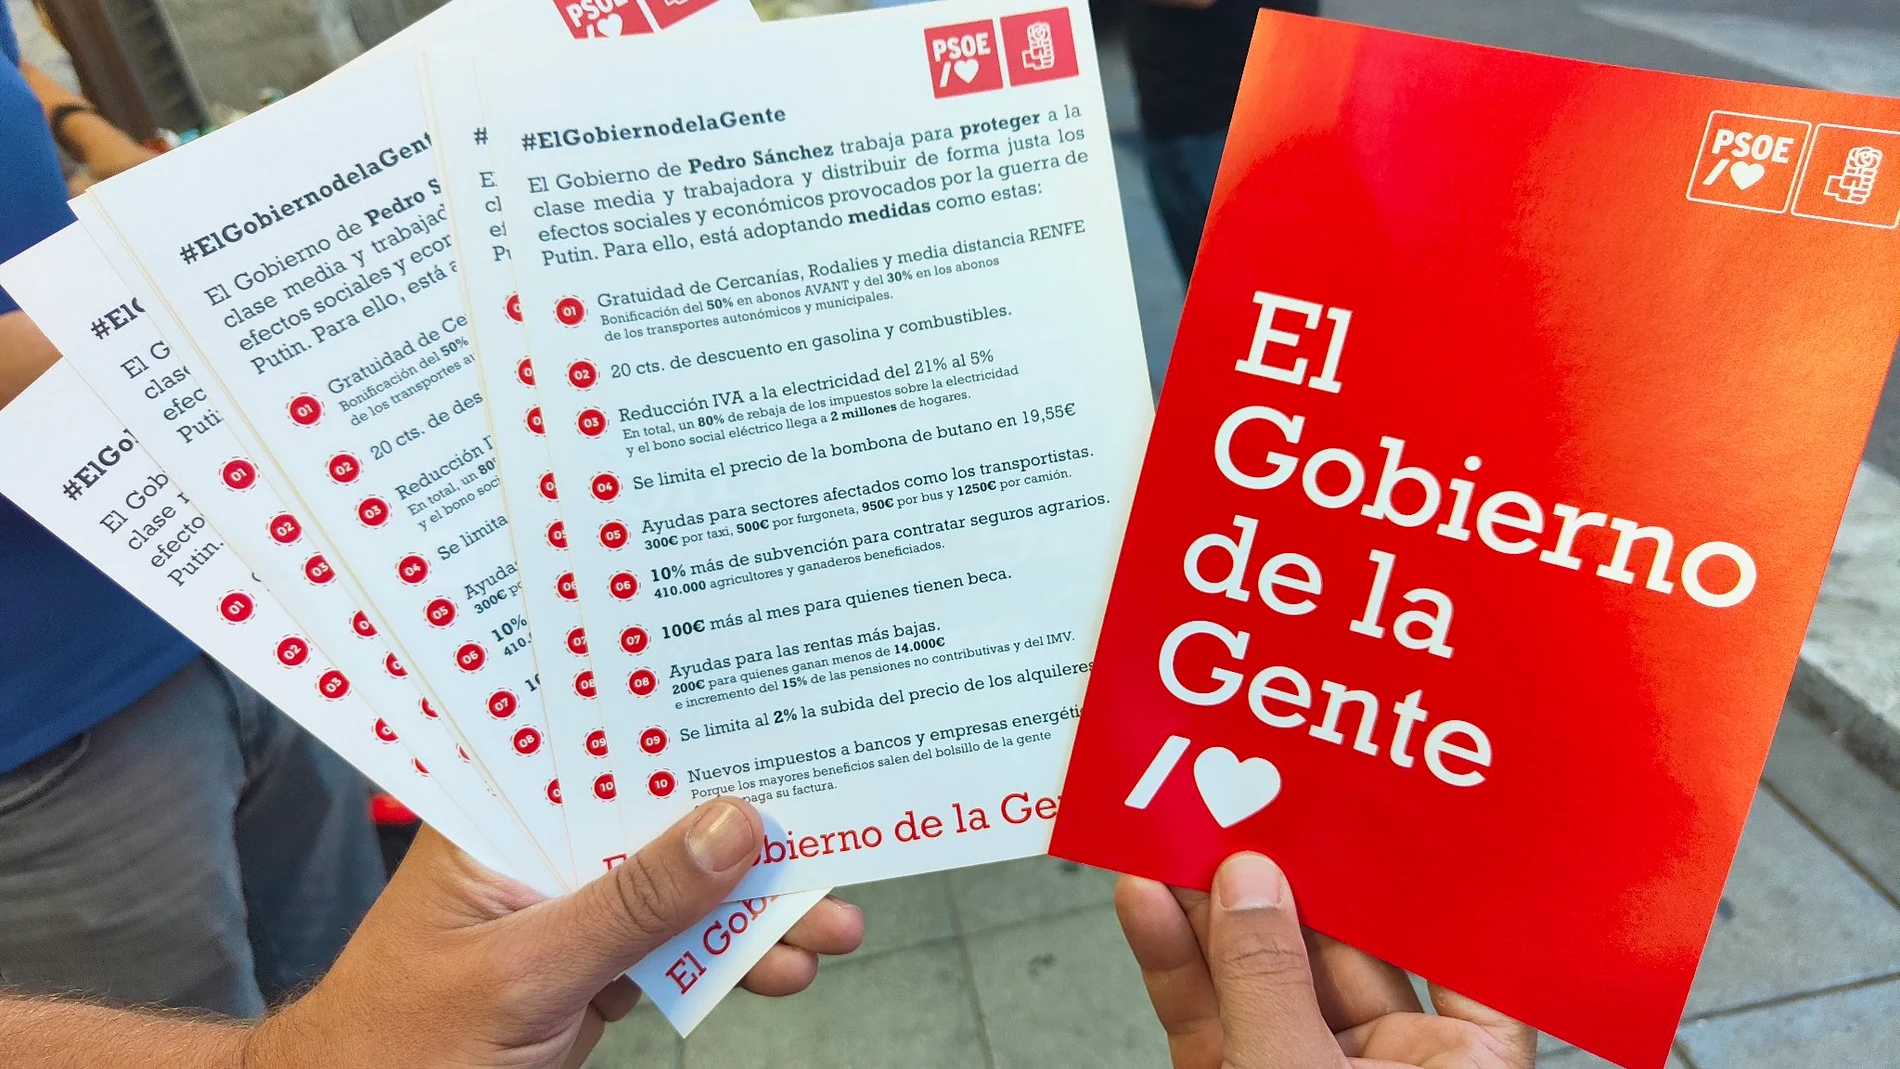 El PSOE reparte octavillas publicitarias en las estaciones de Cercanías con su logo y el lema "El Gobierno de la Gente"